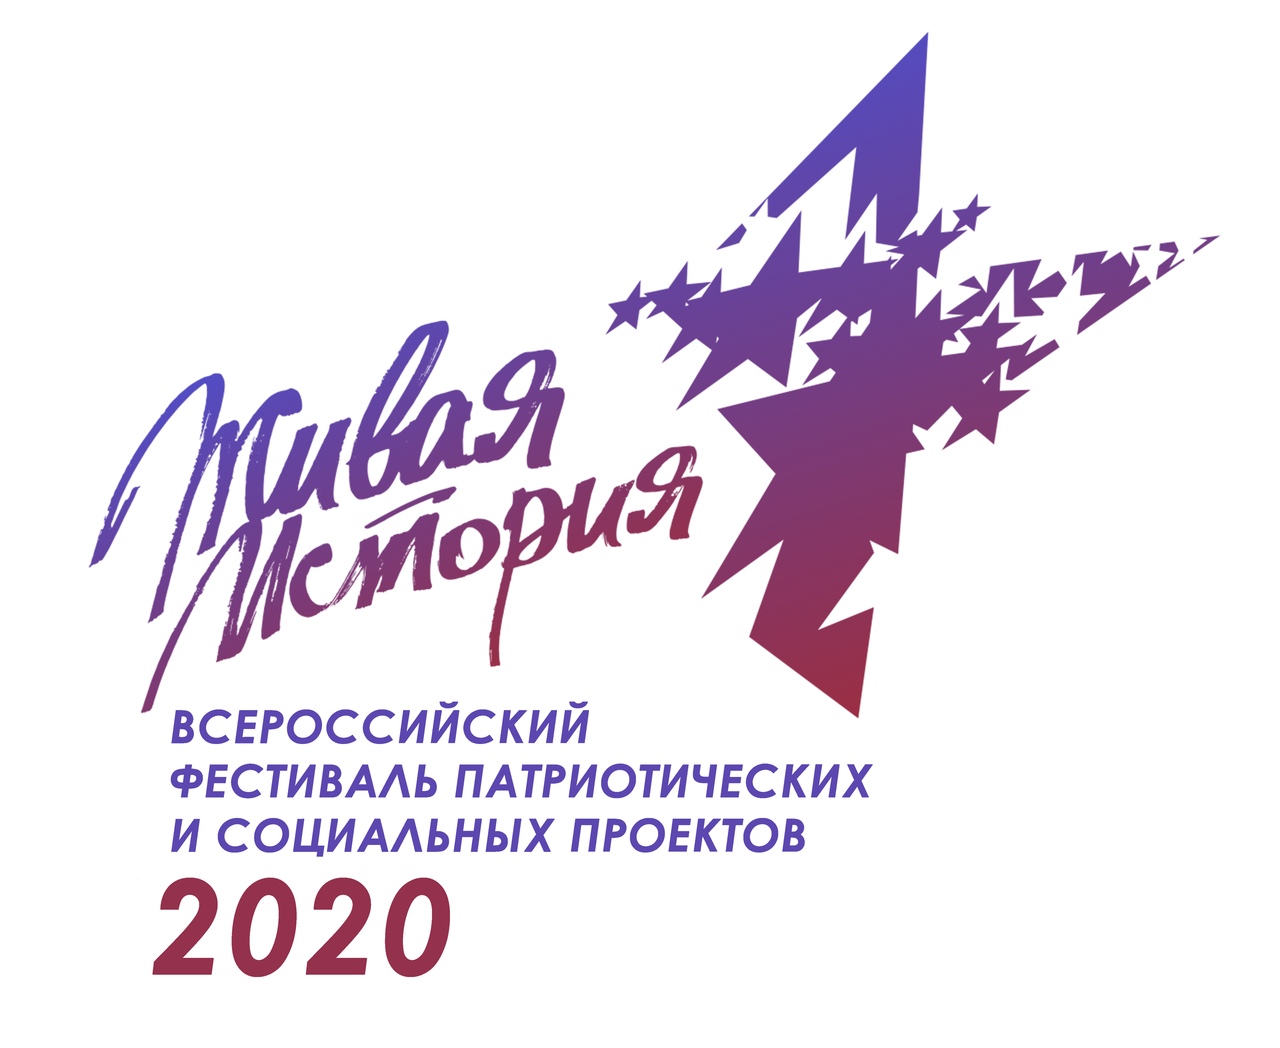 Примите участие во Втором всероссийском фестивале молодёжных патриотических проектов «Живая история»!